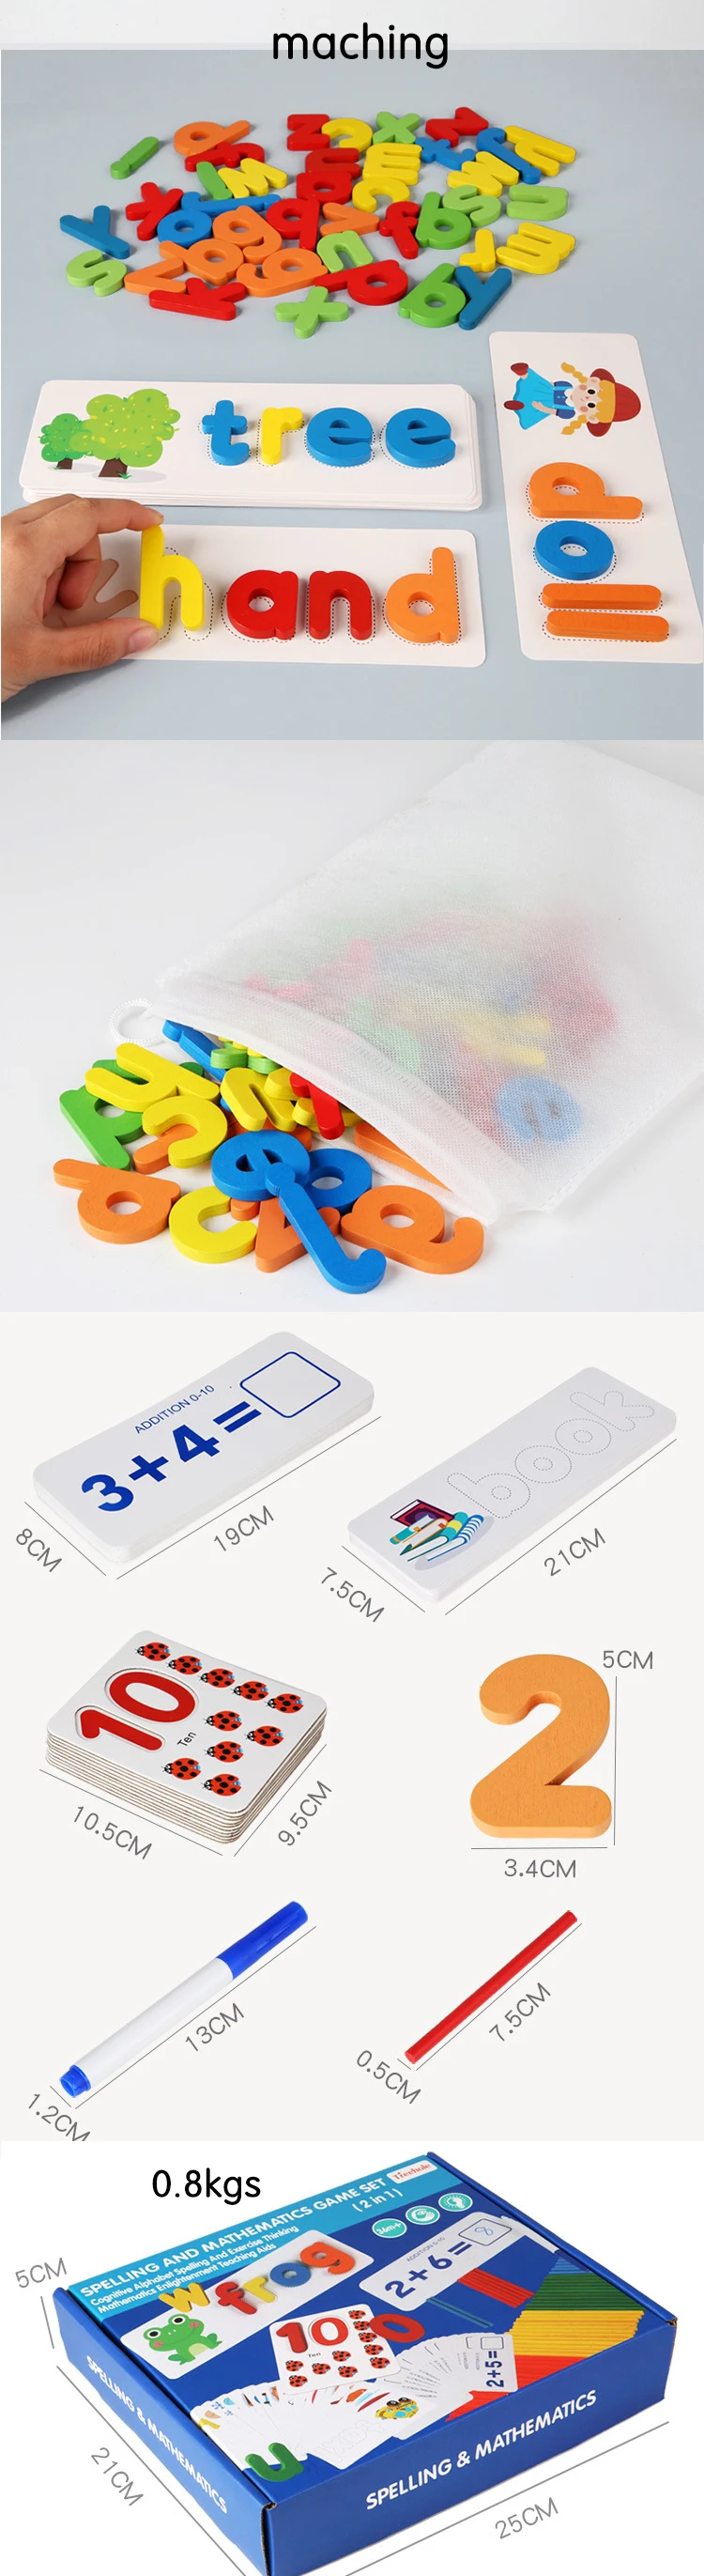 2つの新しい教育用ワードスペルゲーム26の英語のアルファベットと数学の認識子供のためのワードスペルエクササイズ Buy 木製デジタルマッチングおもちゃ 教育用 2 プレーヤーゲーム 新しいクールな数学ゲーム Product On Alibaba Com